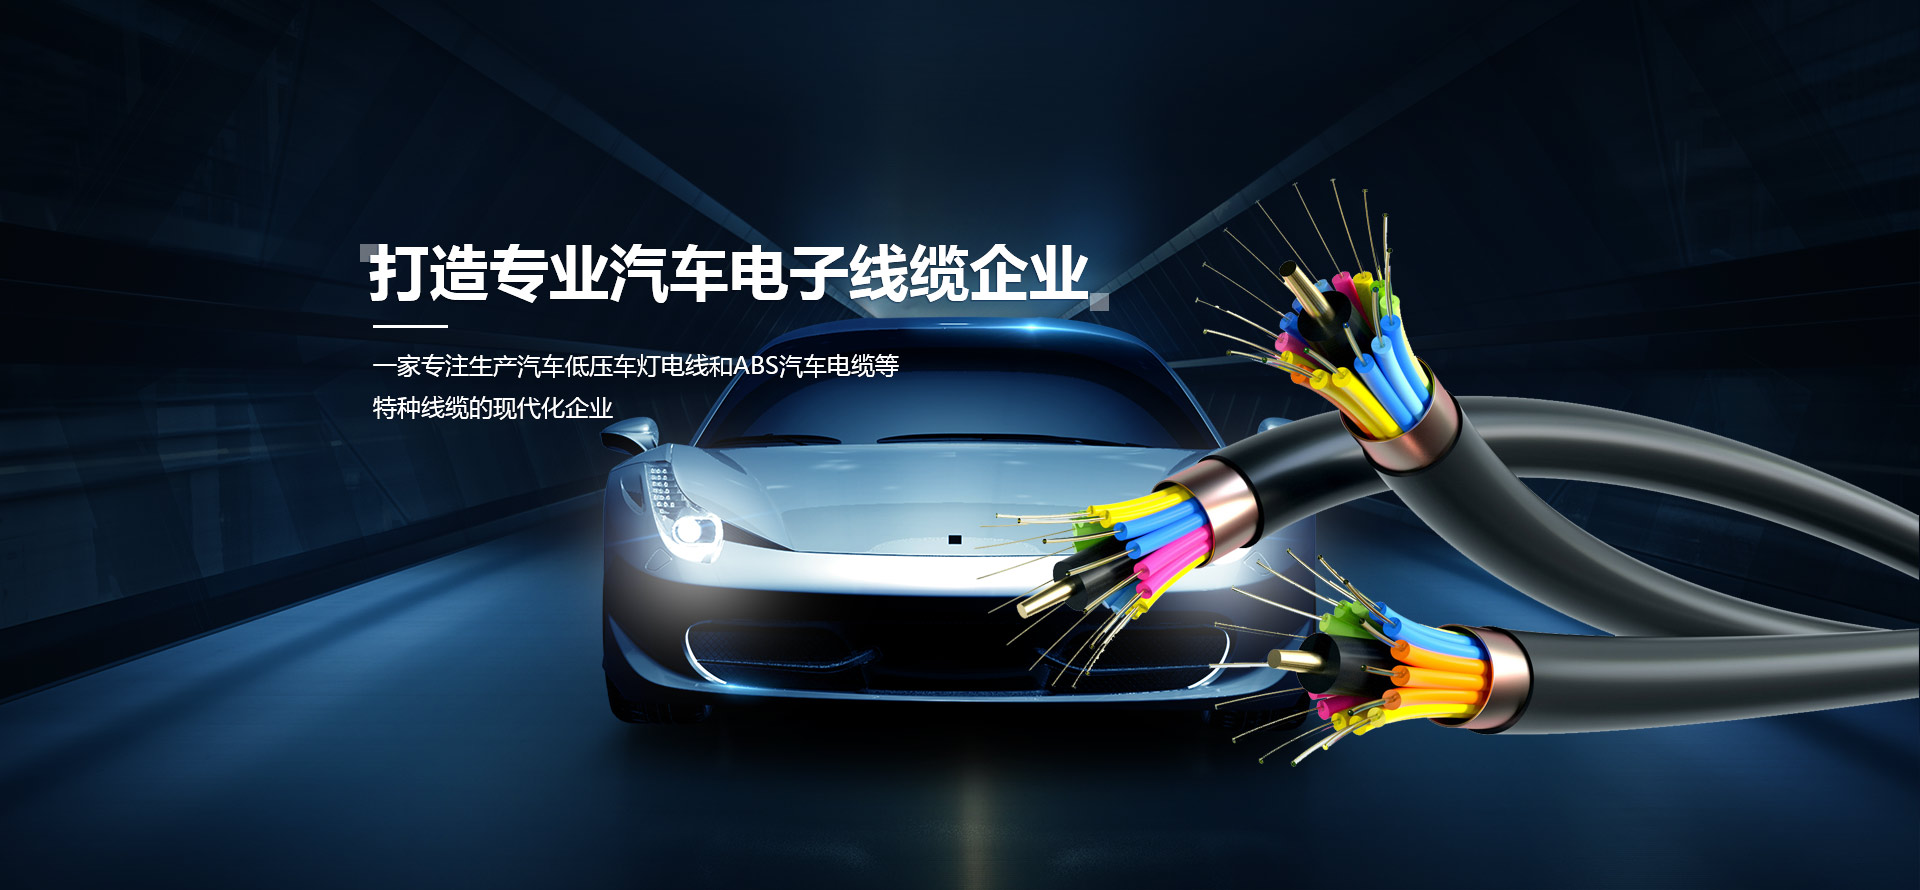 打造專業汽車電子線纜企業